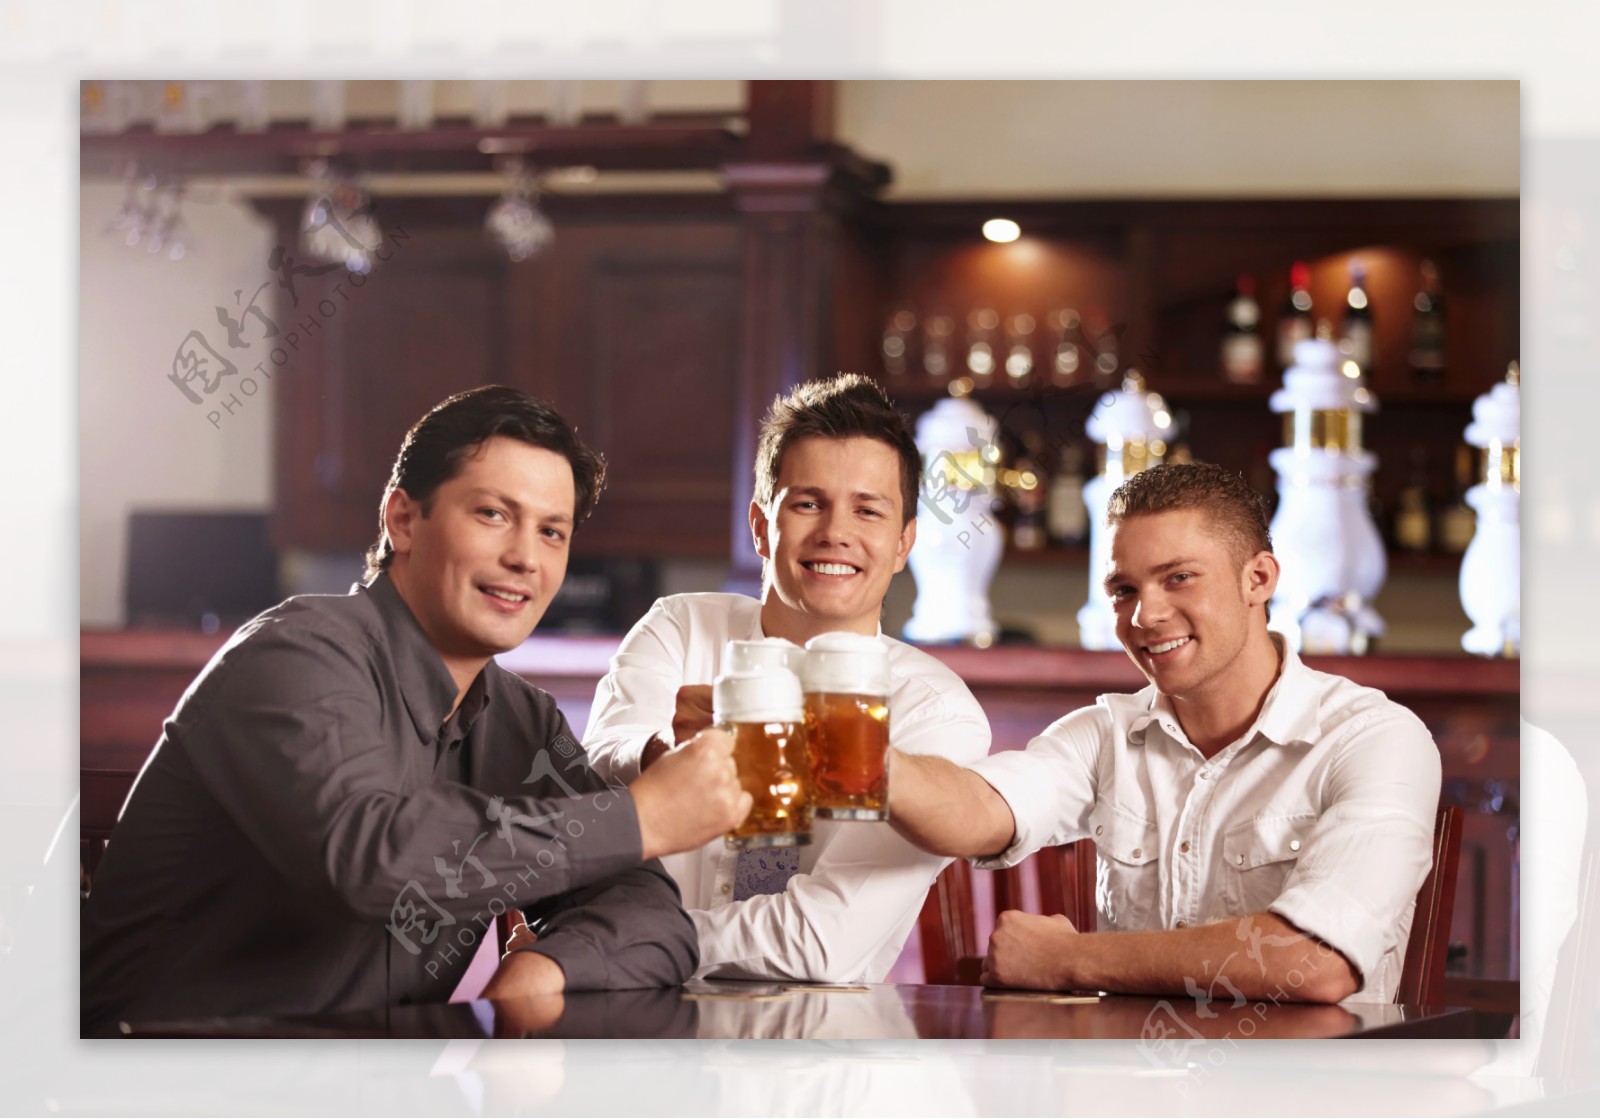 酒吧喝啤酒的男士图片